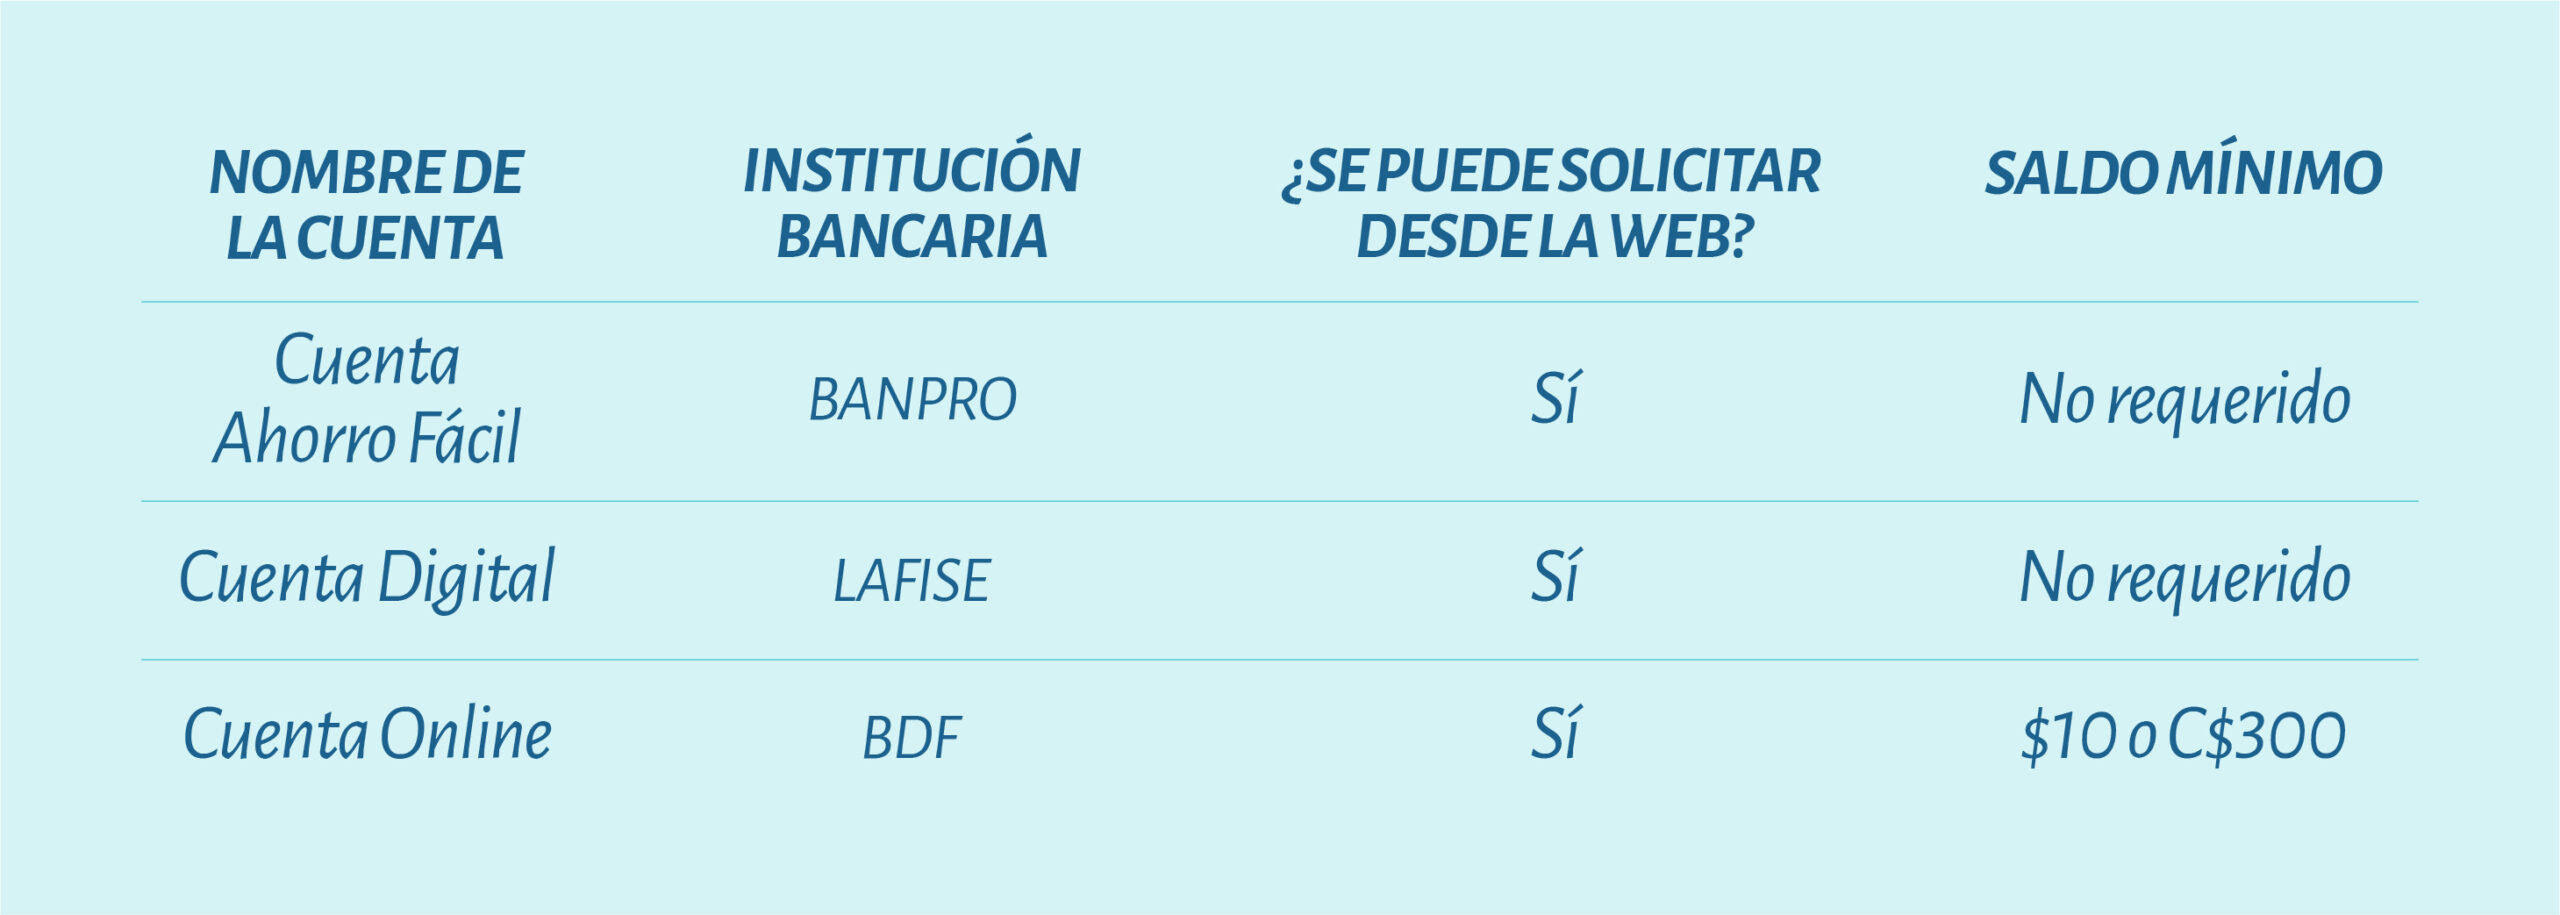 Cuentas de ahorro simplificadas en la banca de Nicaragua